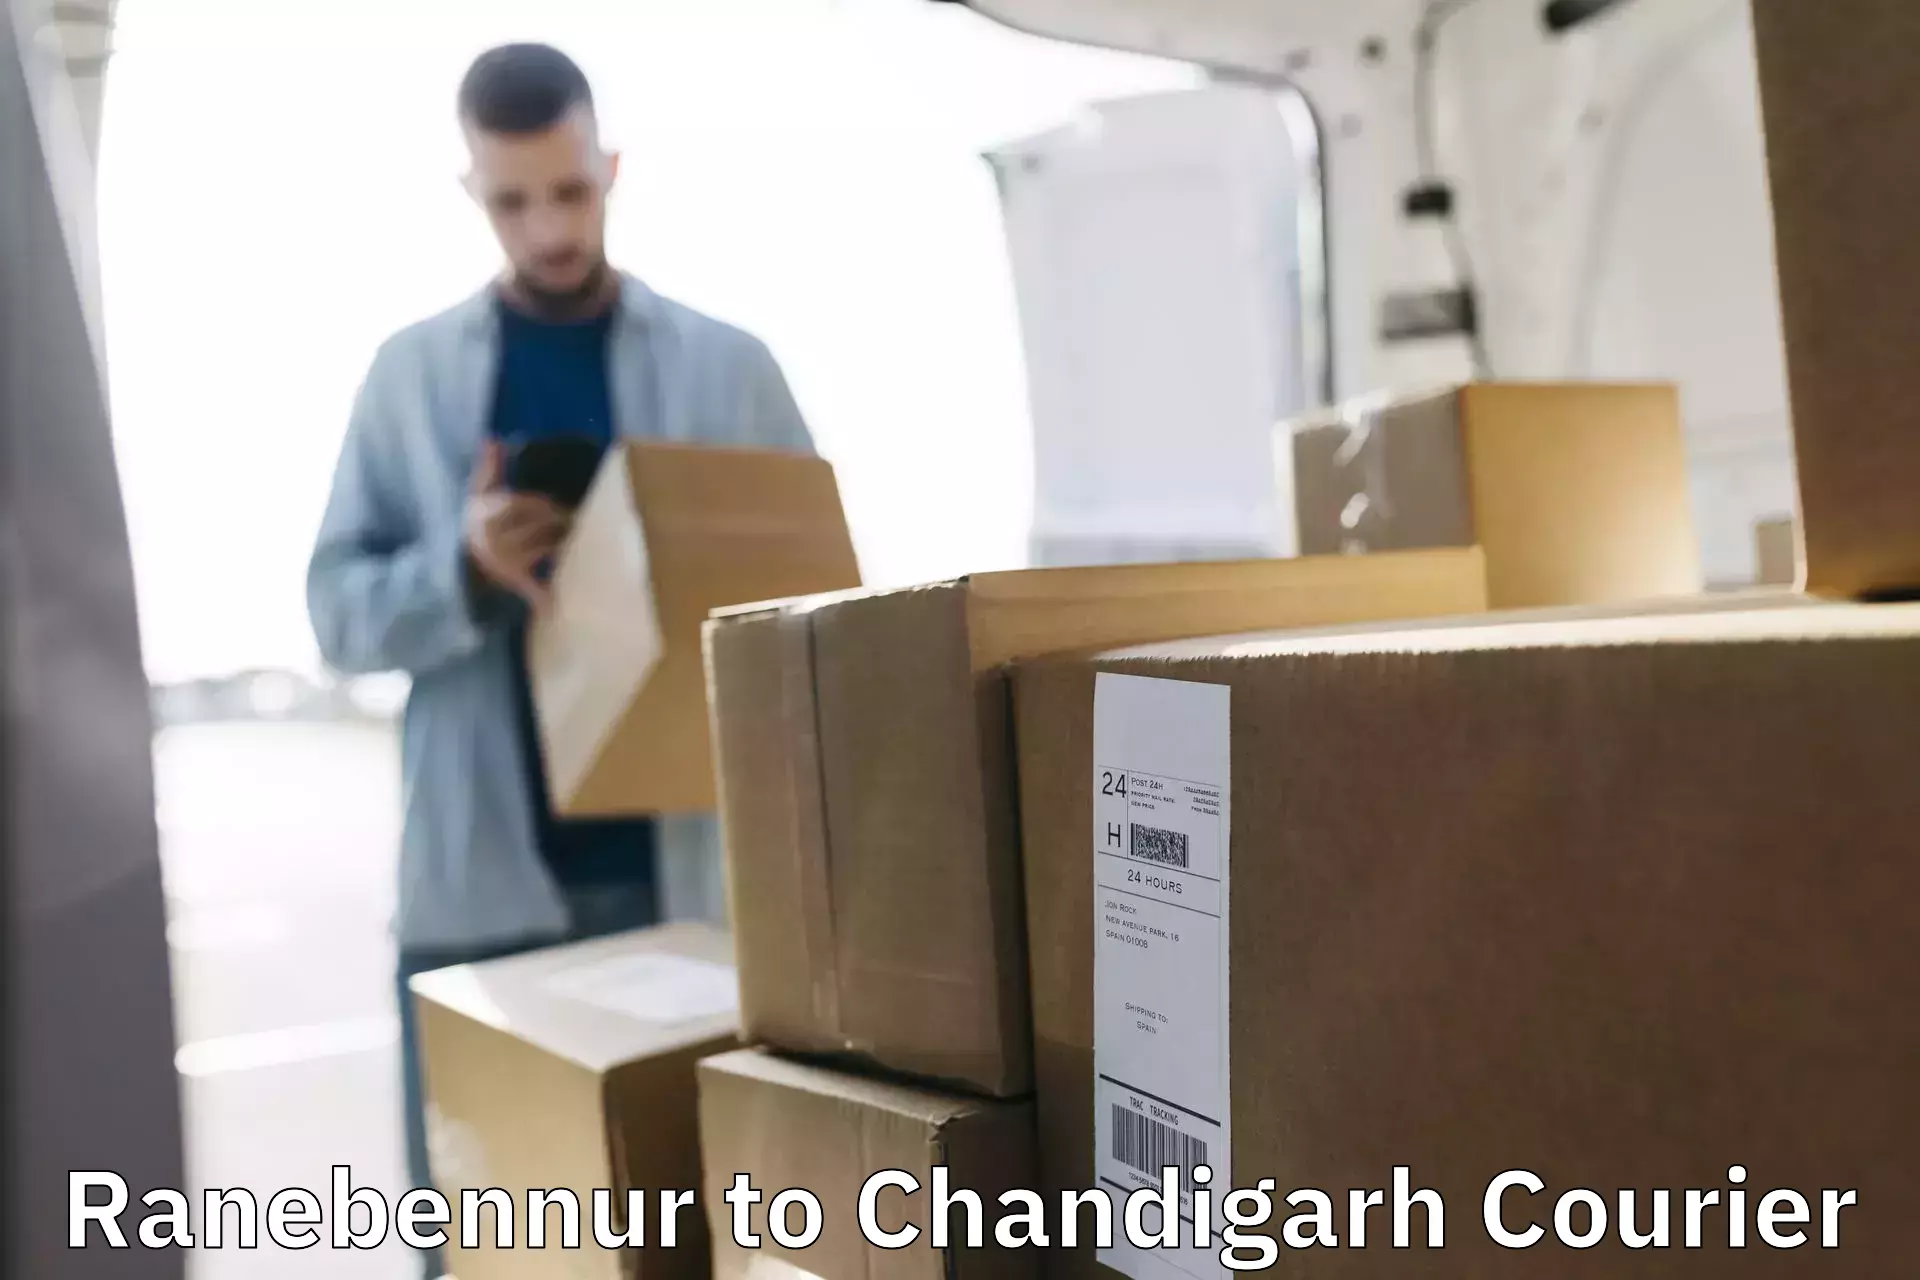 Efficient parcel service Ranebennur to Chandigarh